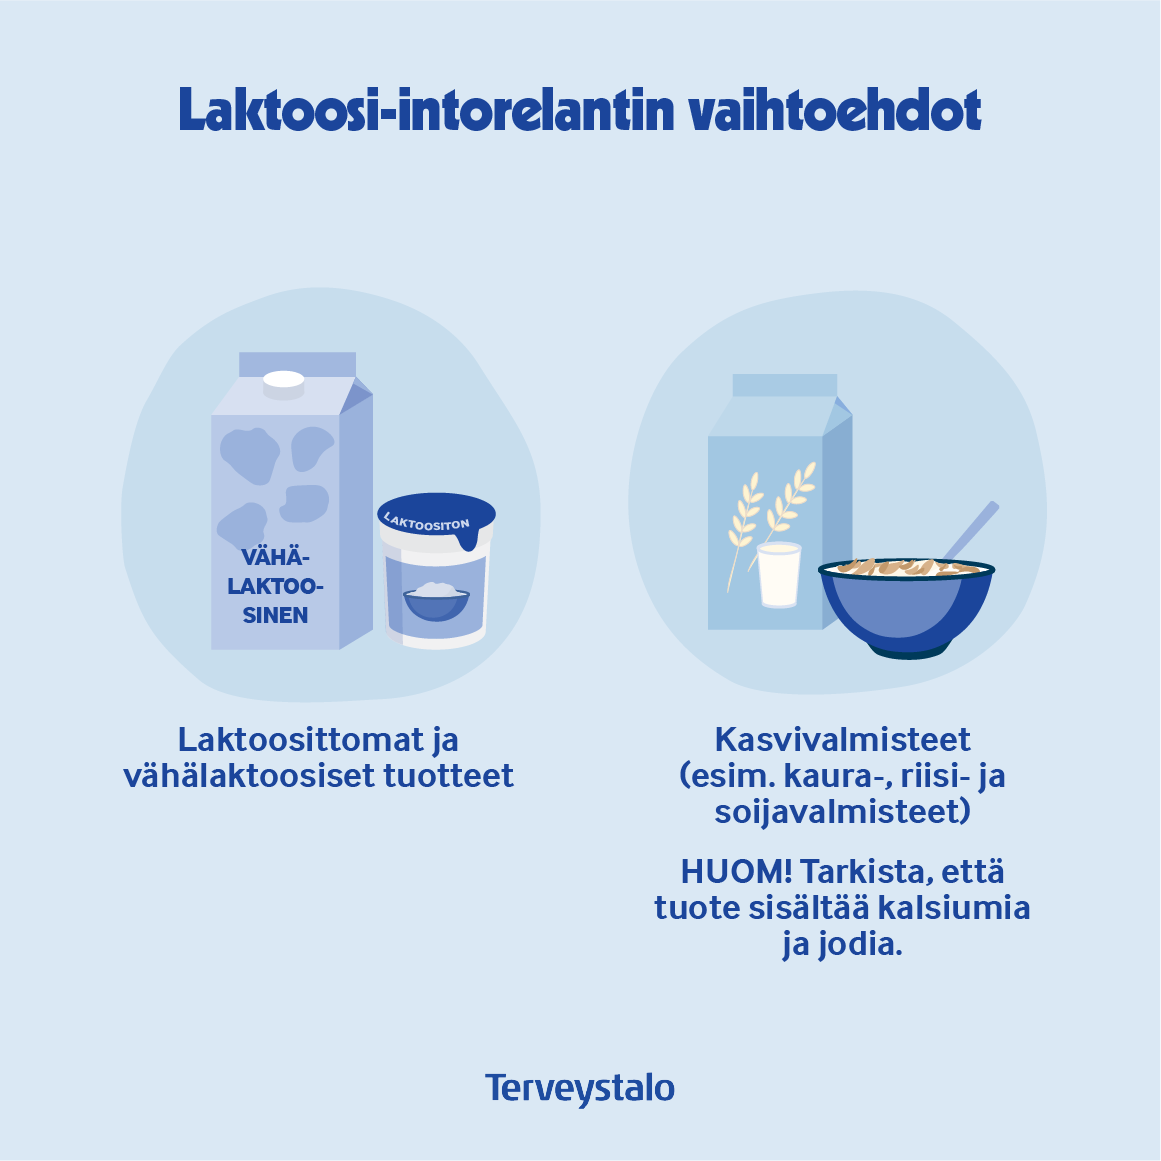 laktoosi-intolerantin-vaihtoehdot.png